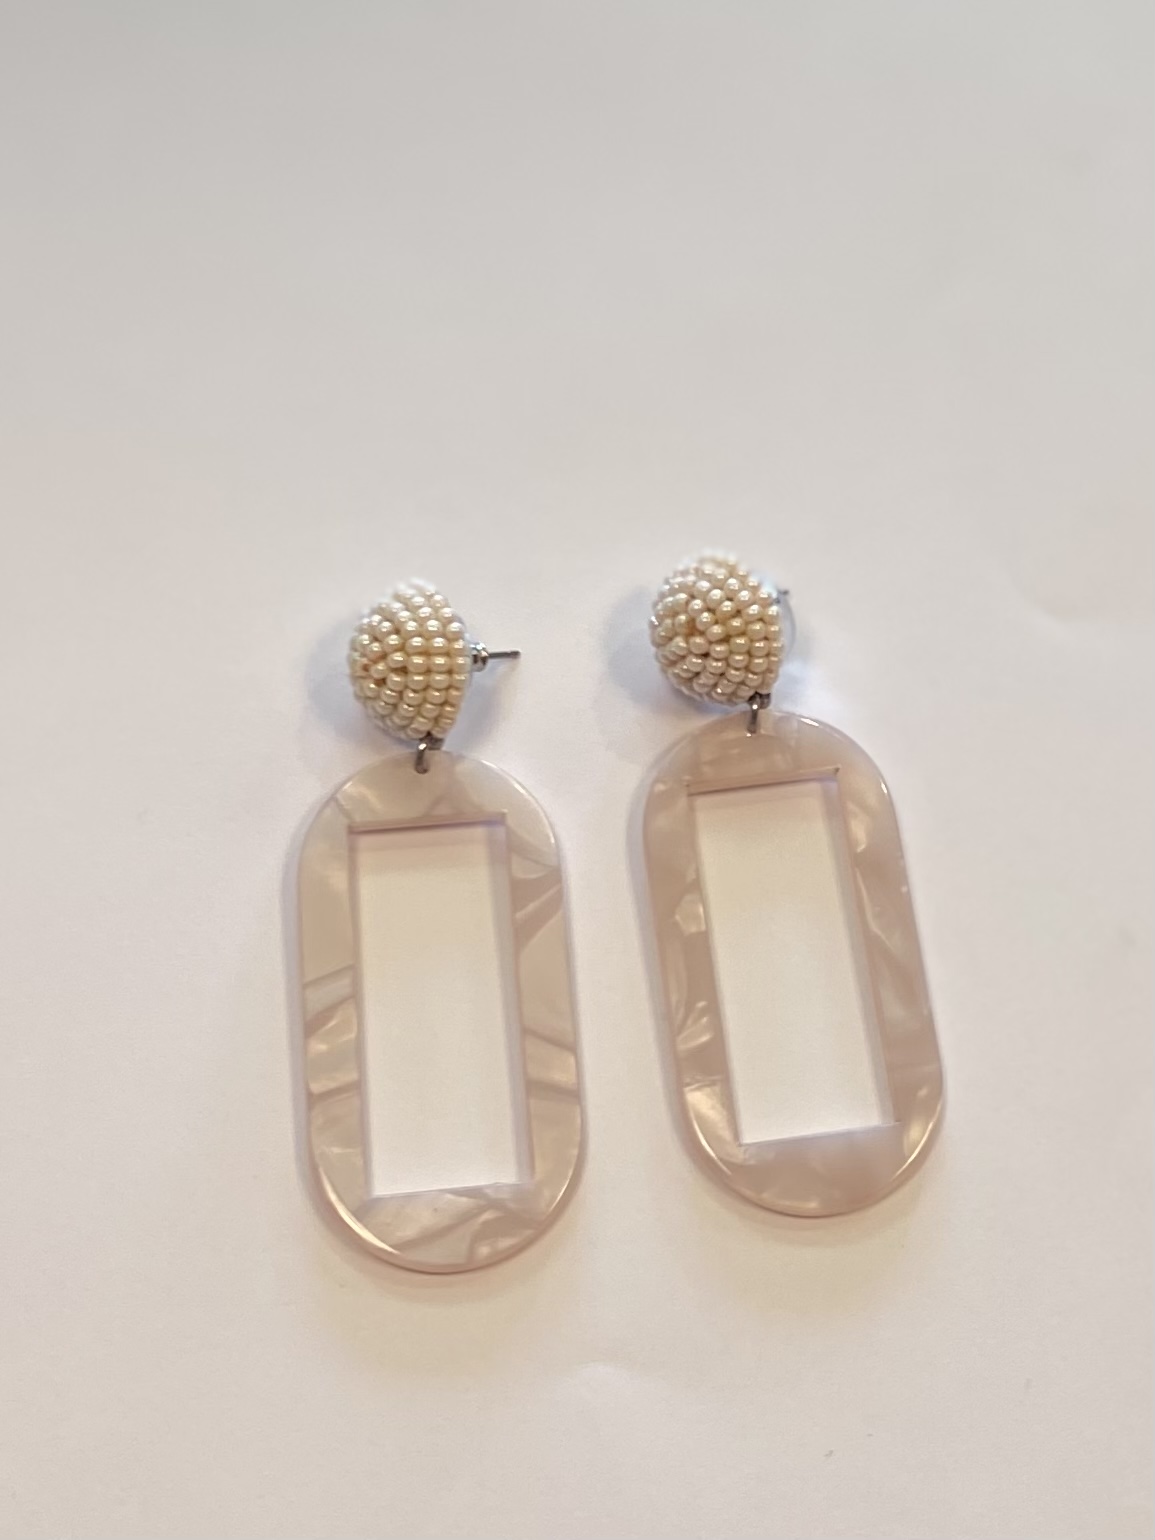 Pnk/bead Cut Out Earrings
Pink
Size: Earrings